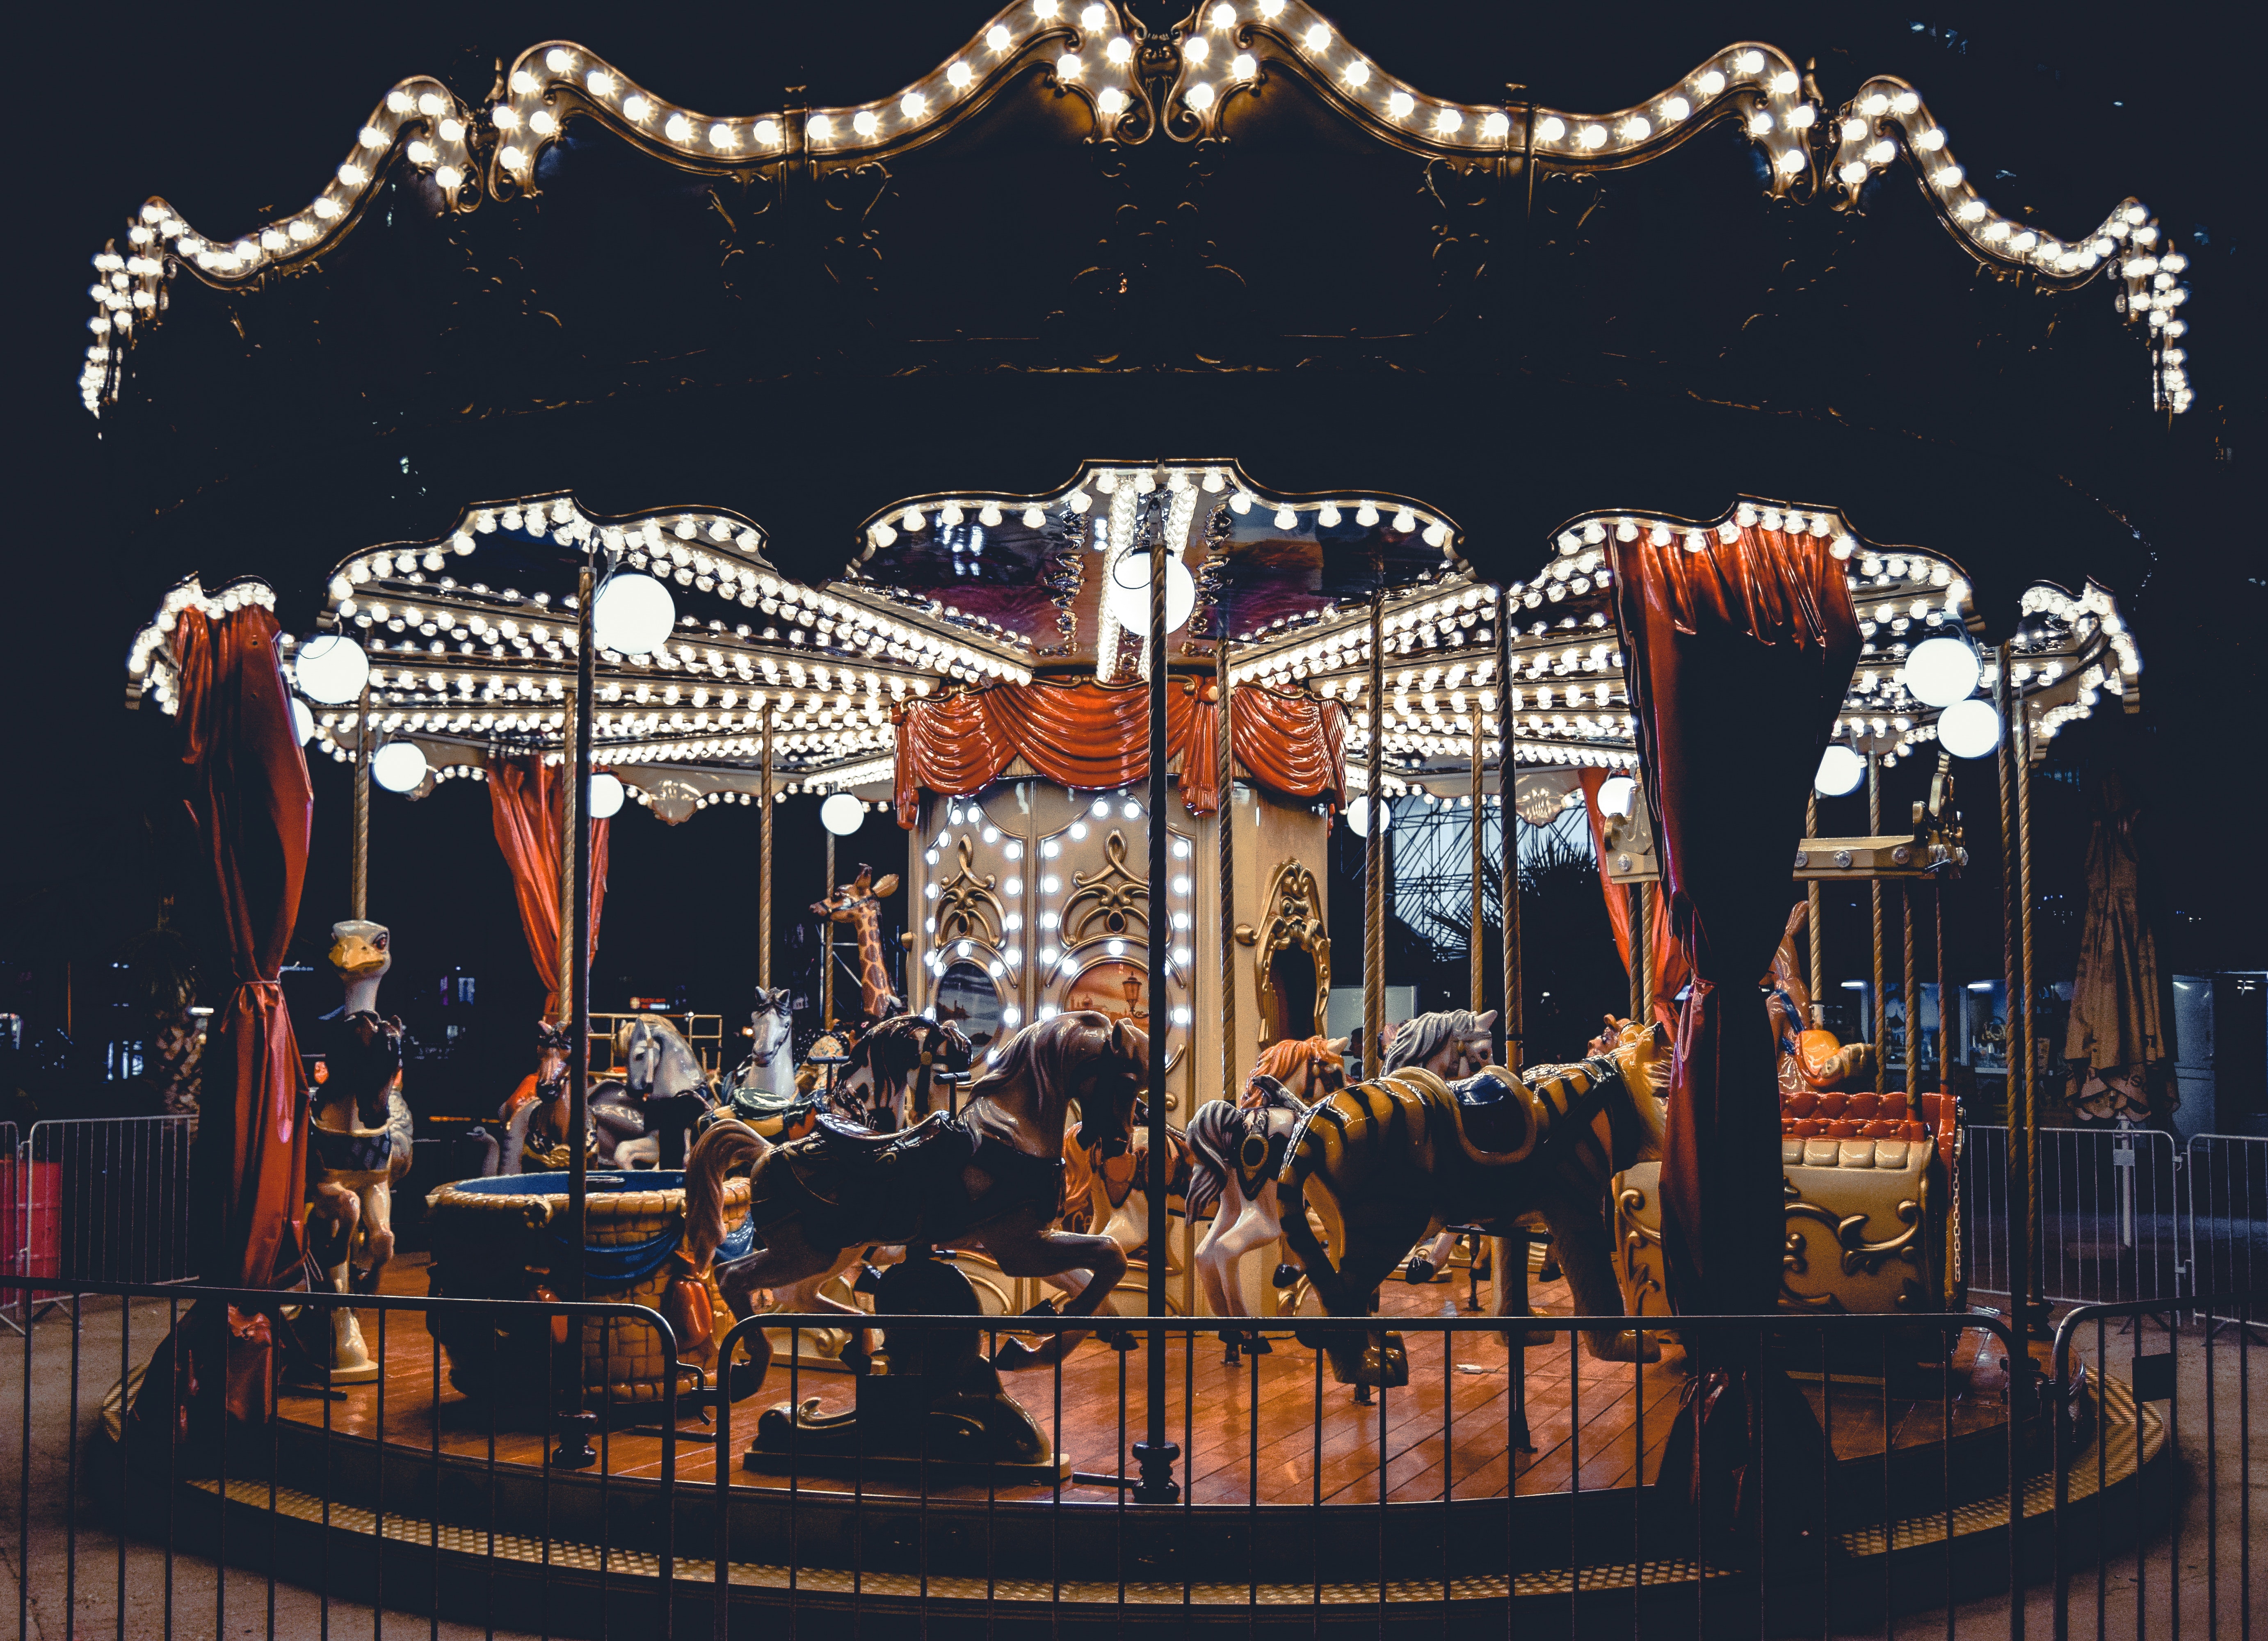 Carousel at Night.